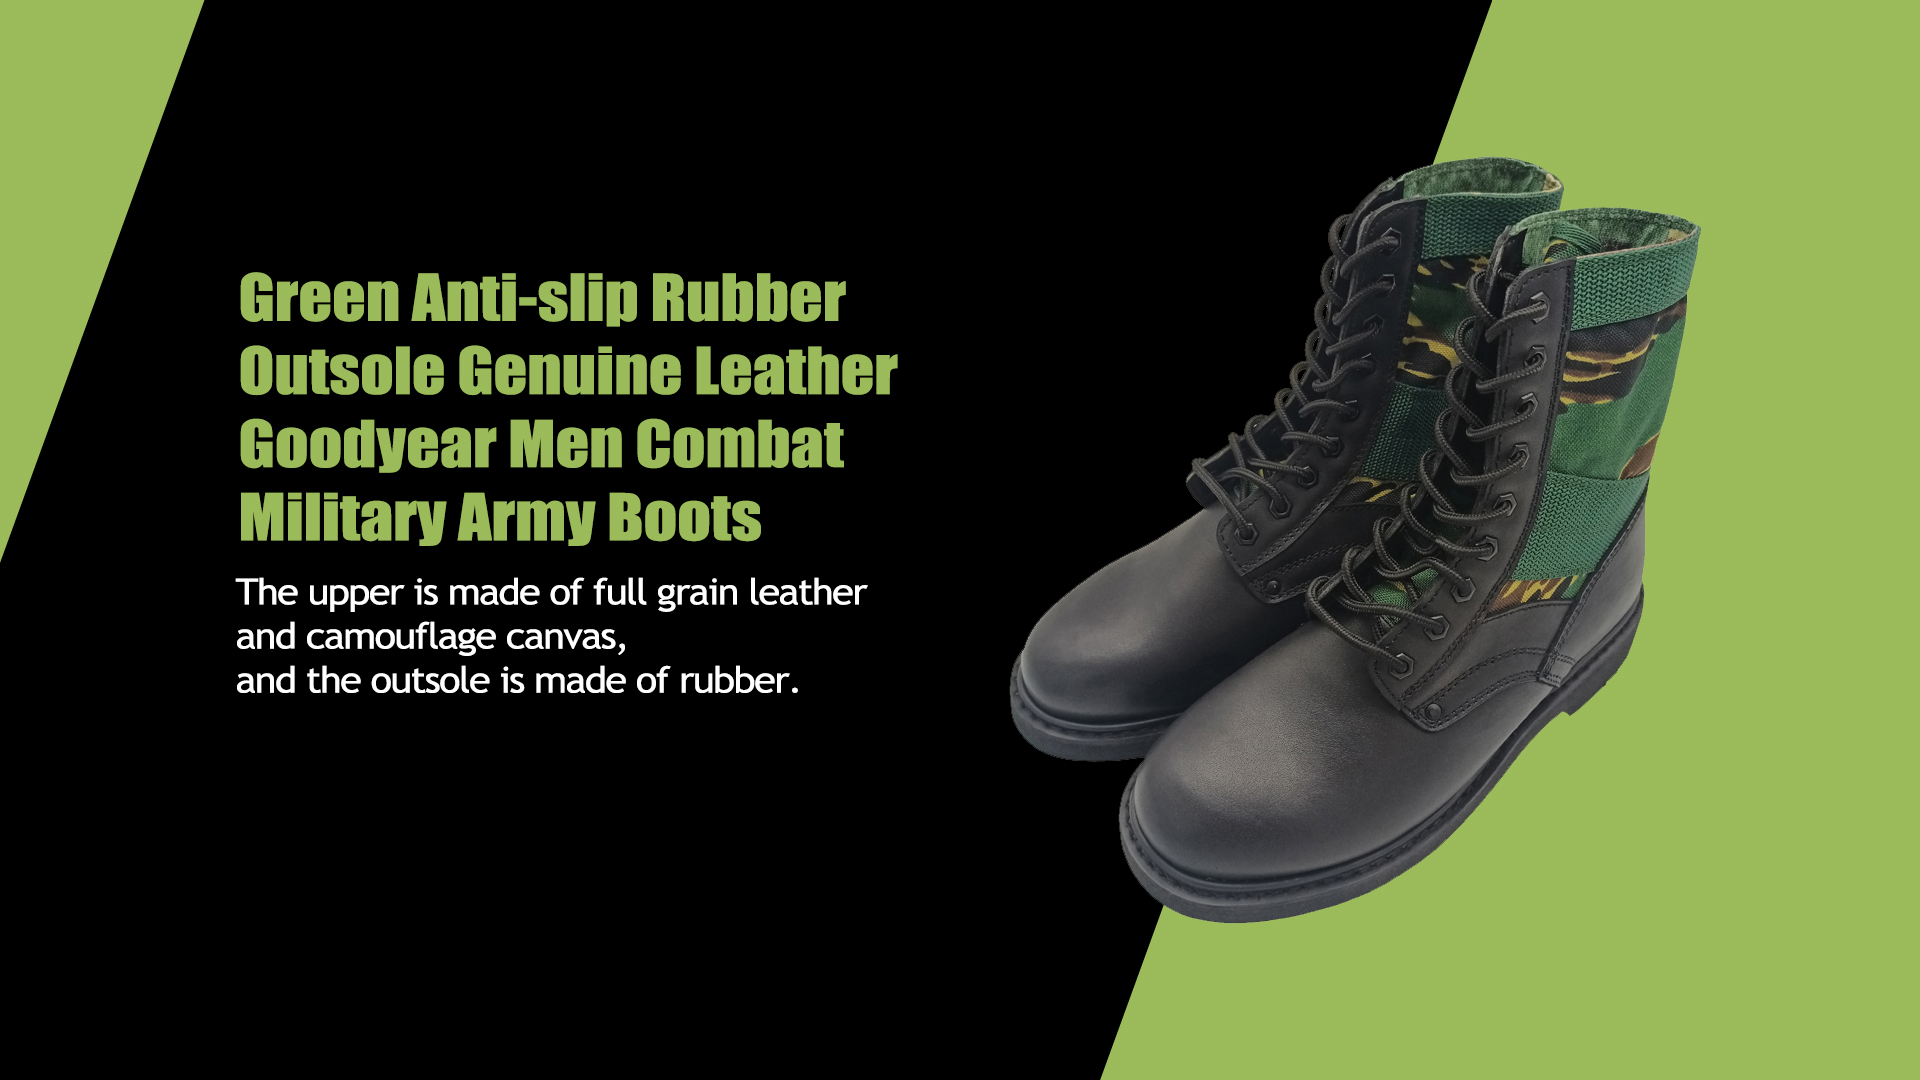 Sola de borracha antiderrapante verde couro genuíno Goodyear homens combate militar botas militares